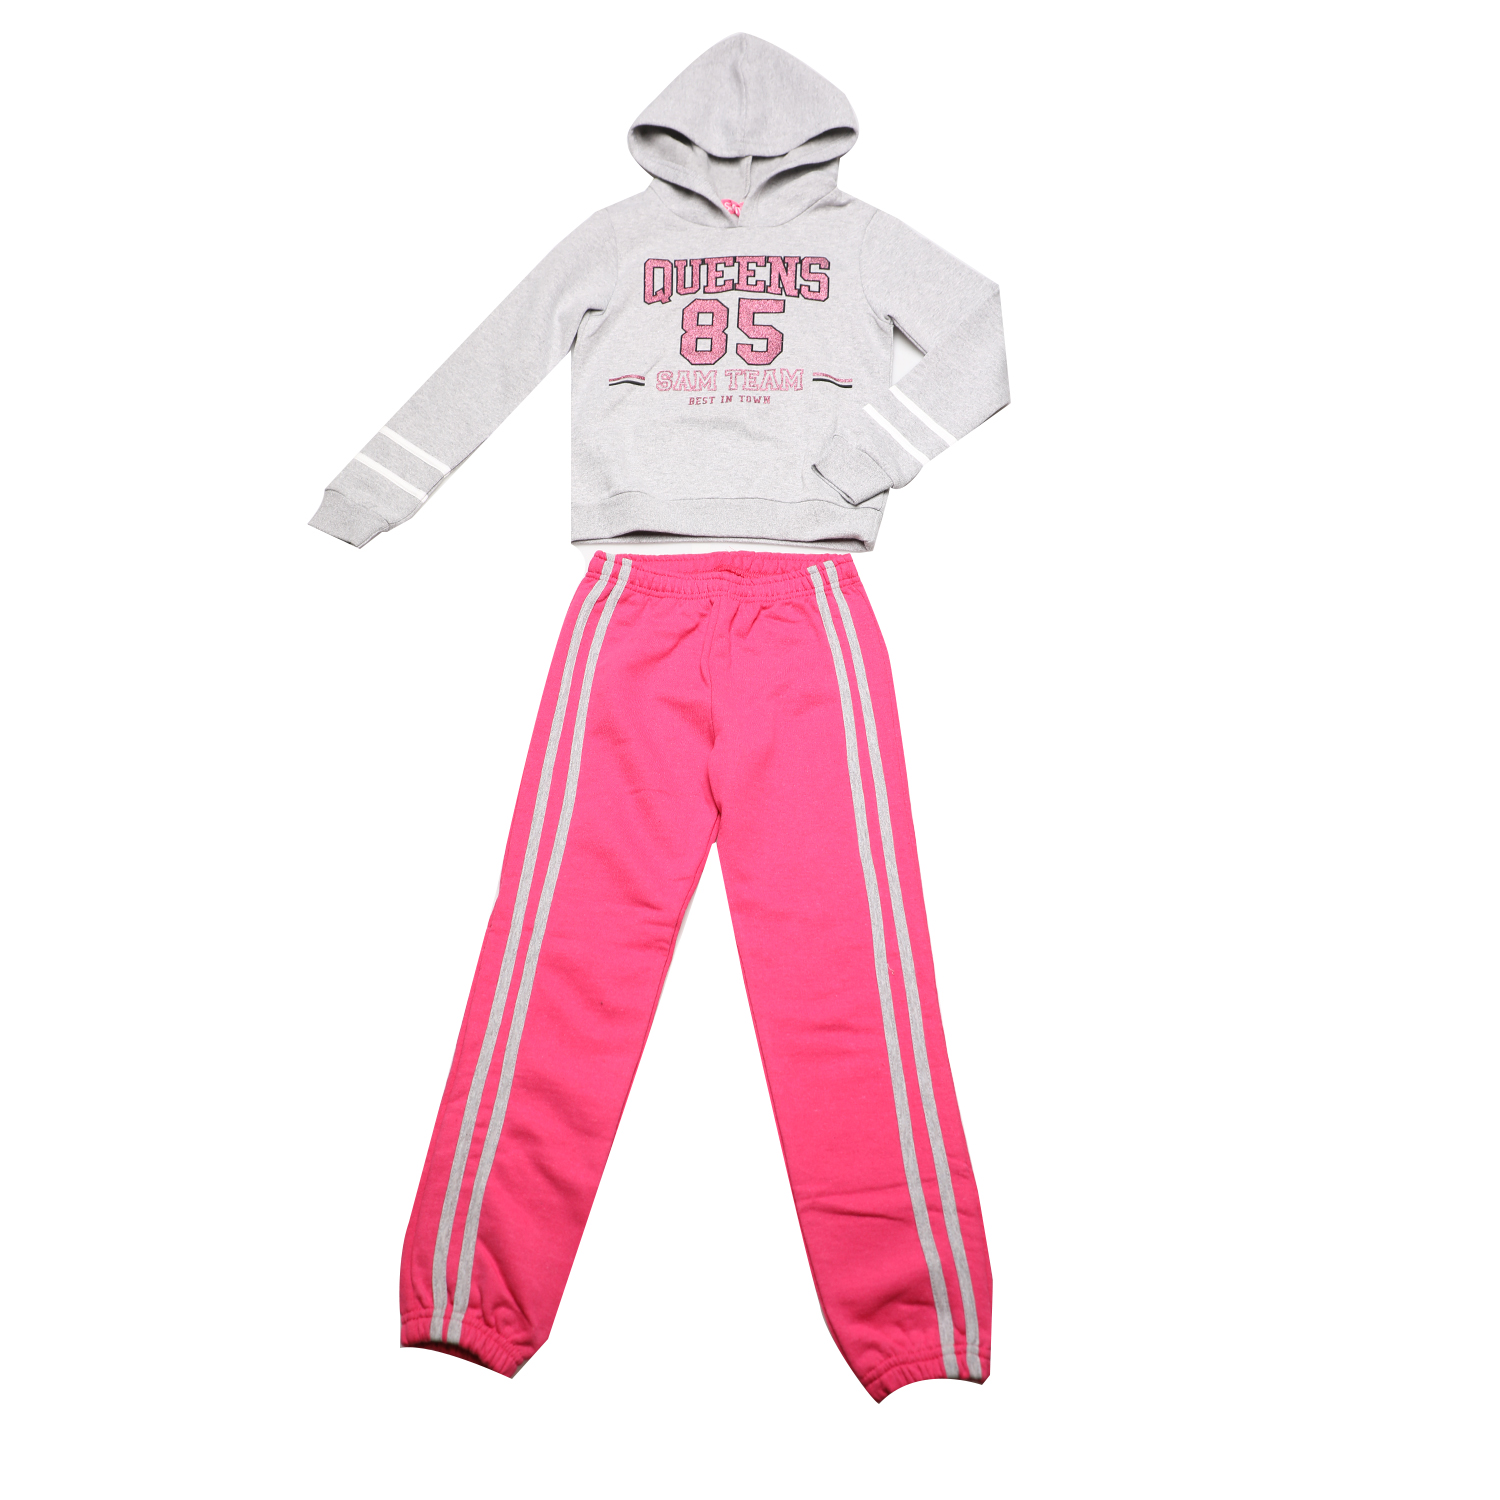 Παιδικά/Girls/Ρούχα/Σετ SAM 0-13 - Παιδκό σετ φόρμας SAM 0-13 QUEENS 85 γκρι ροζ